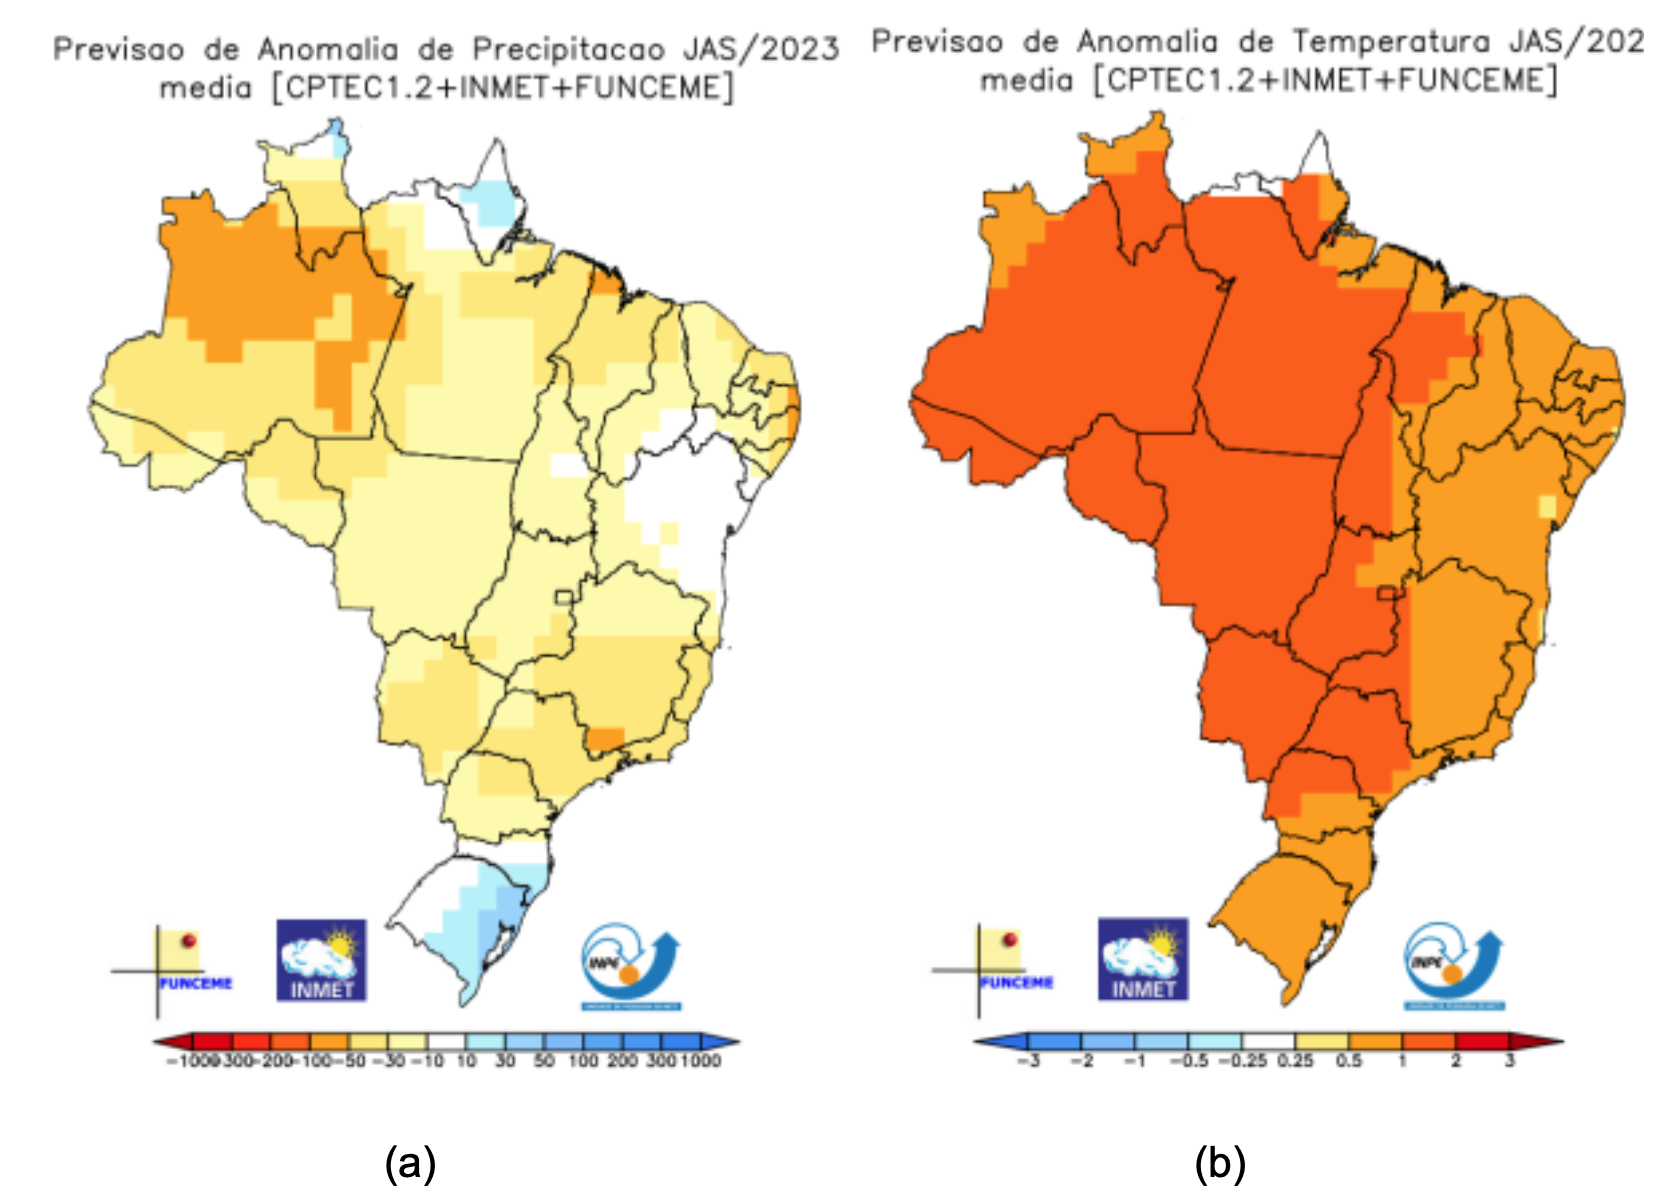 Previsão de anomalias de (a) precipitação e (b) temperatura média do ar do multi-modelo INPE/INMET/FUNCEME para o trimestre JAS/2023